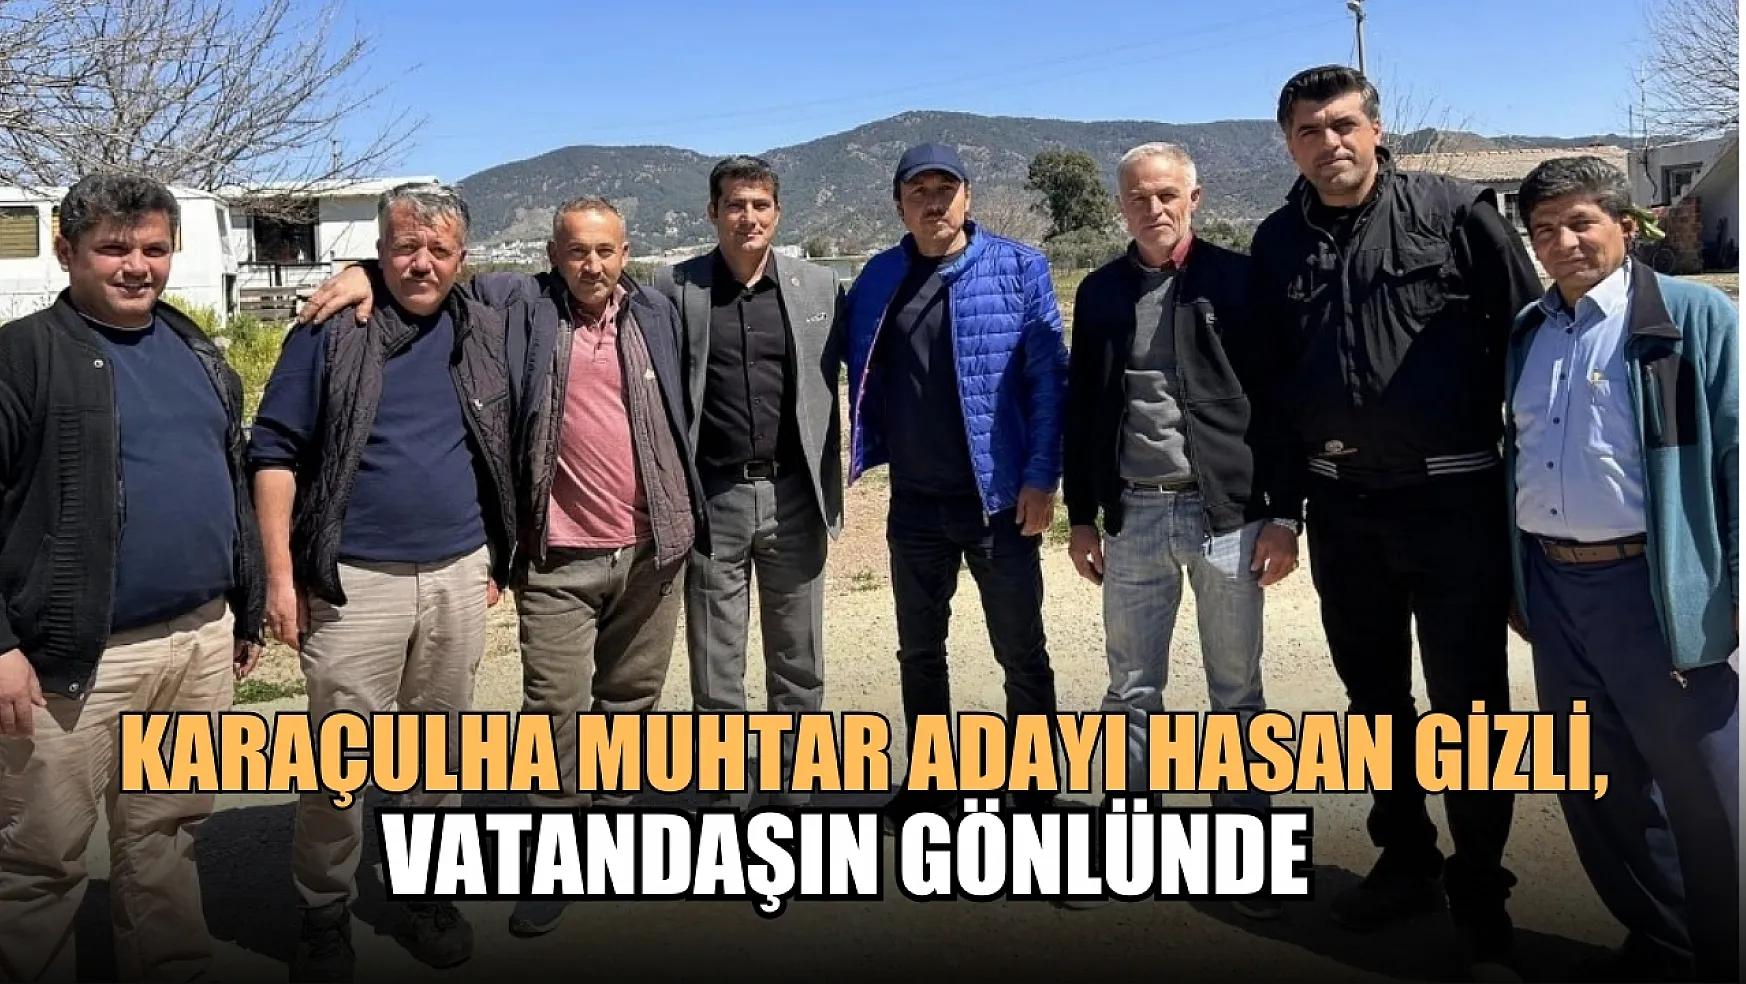 Karaçulha Muhtar Adayı Hasan Gizli, Vatandaşın Gönlünde